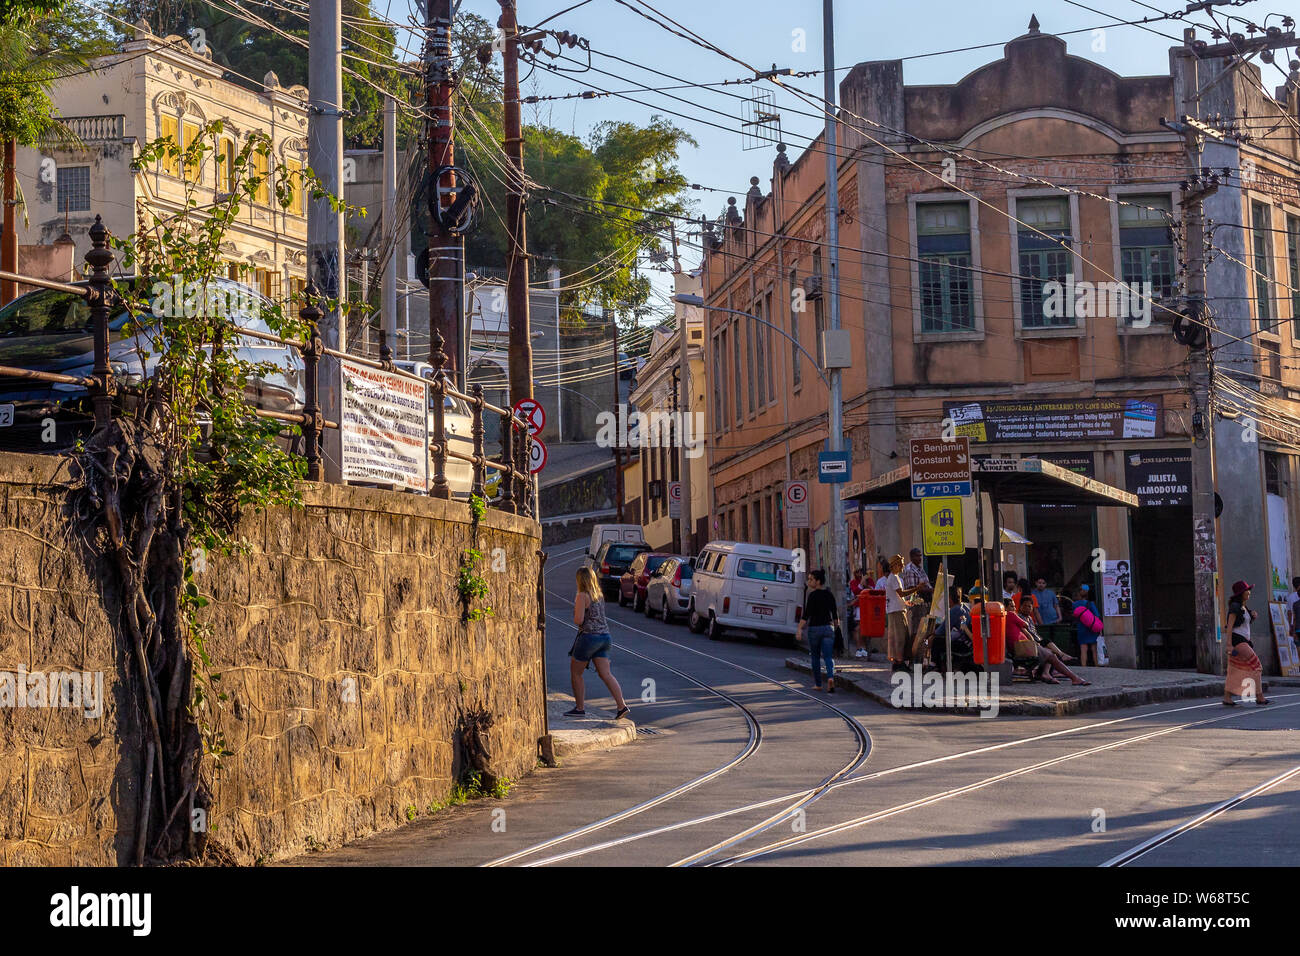 Santa Teresa, Rio de Janeiro, Brazil - July 24, 2016: The Largo do Guimaraes and Almirante Alexandrino street at Santa Teresa district. Stock Photo